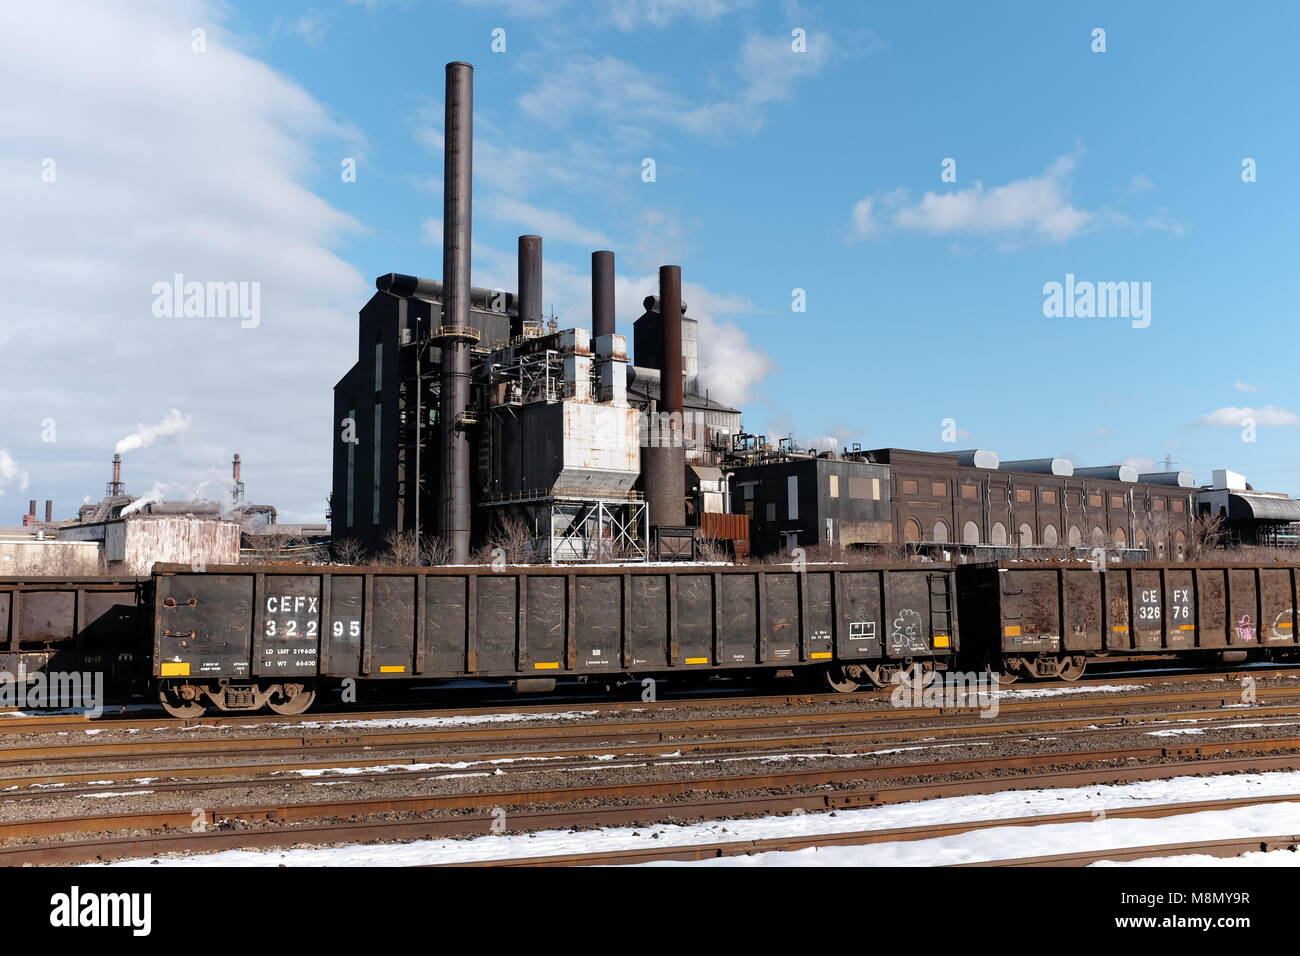 Eine funktionierende steelyard und Factory im Mittelwesten Rust Belt Stadt von Cleveland, Ohio ist an einem bewölkten Nachmittag Anfang März 2018 dargestellt. Stockfoto